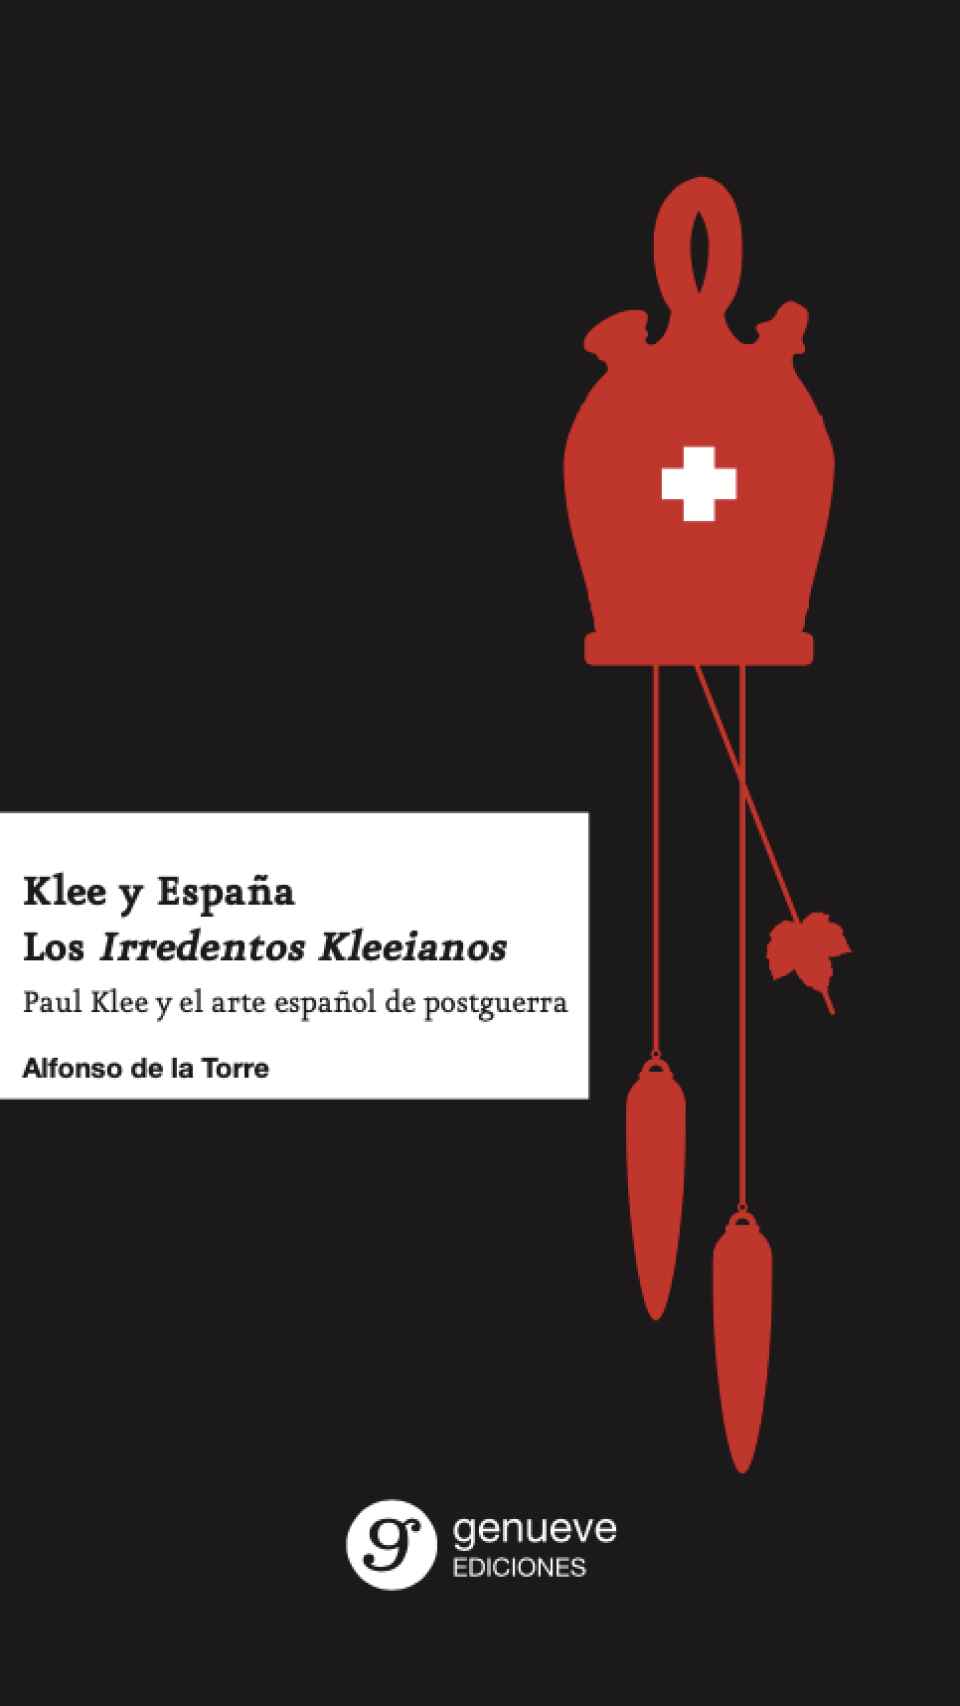 Porta de 'Klee y España'